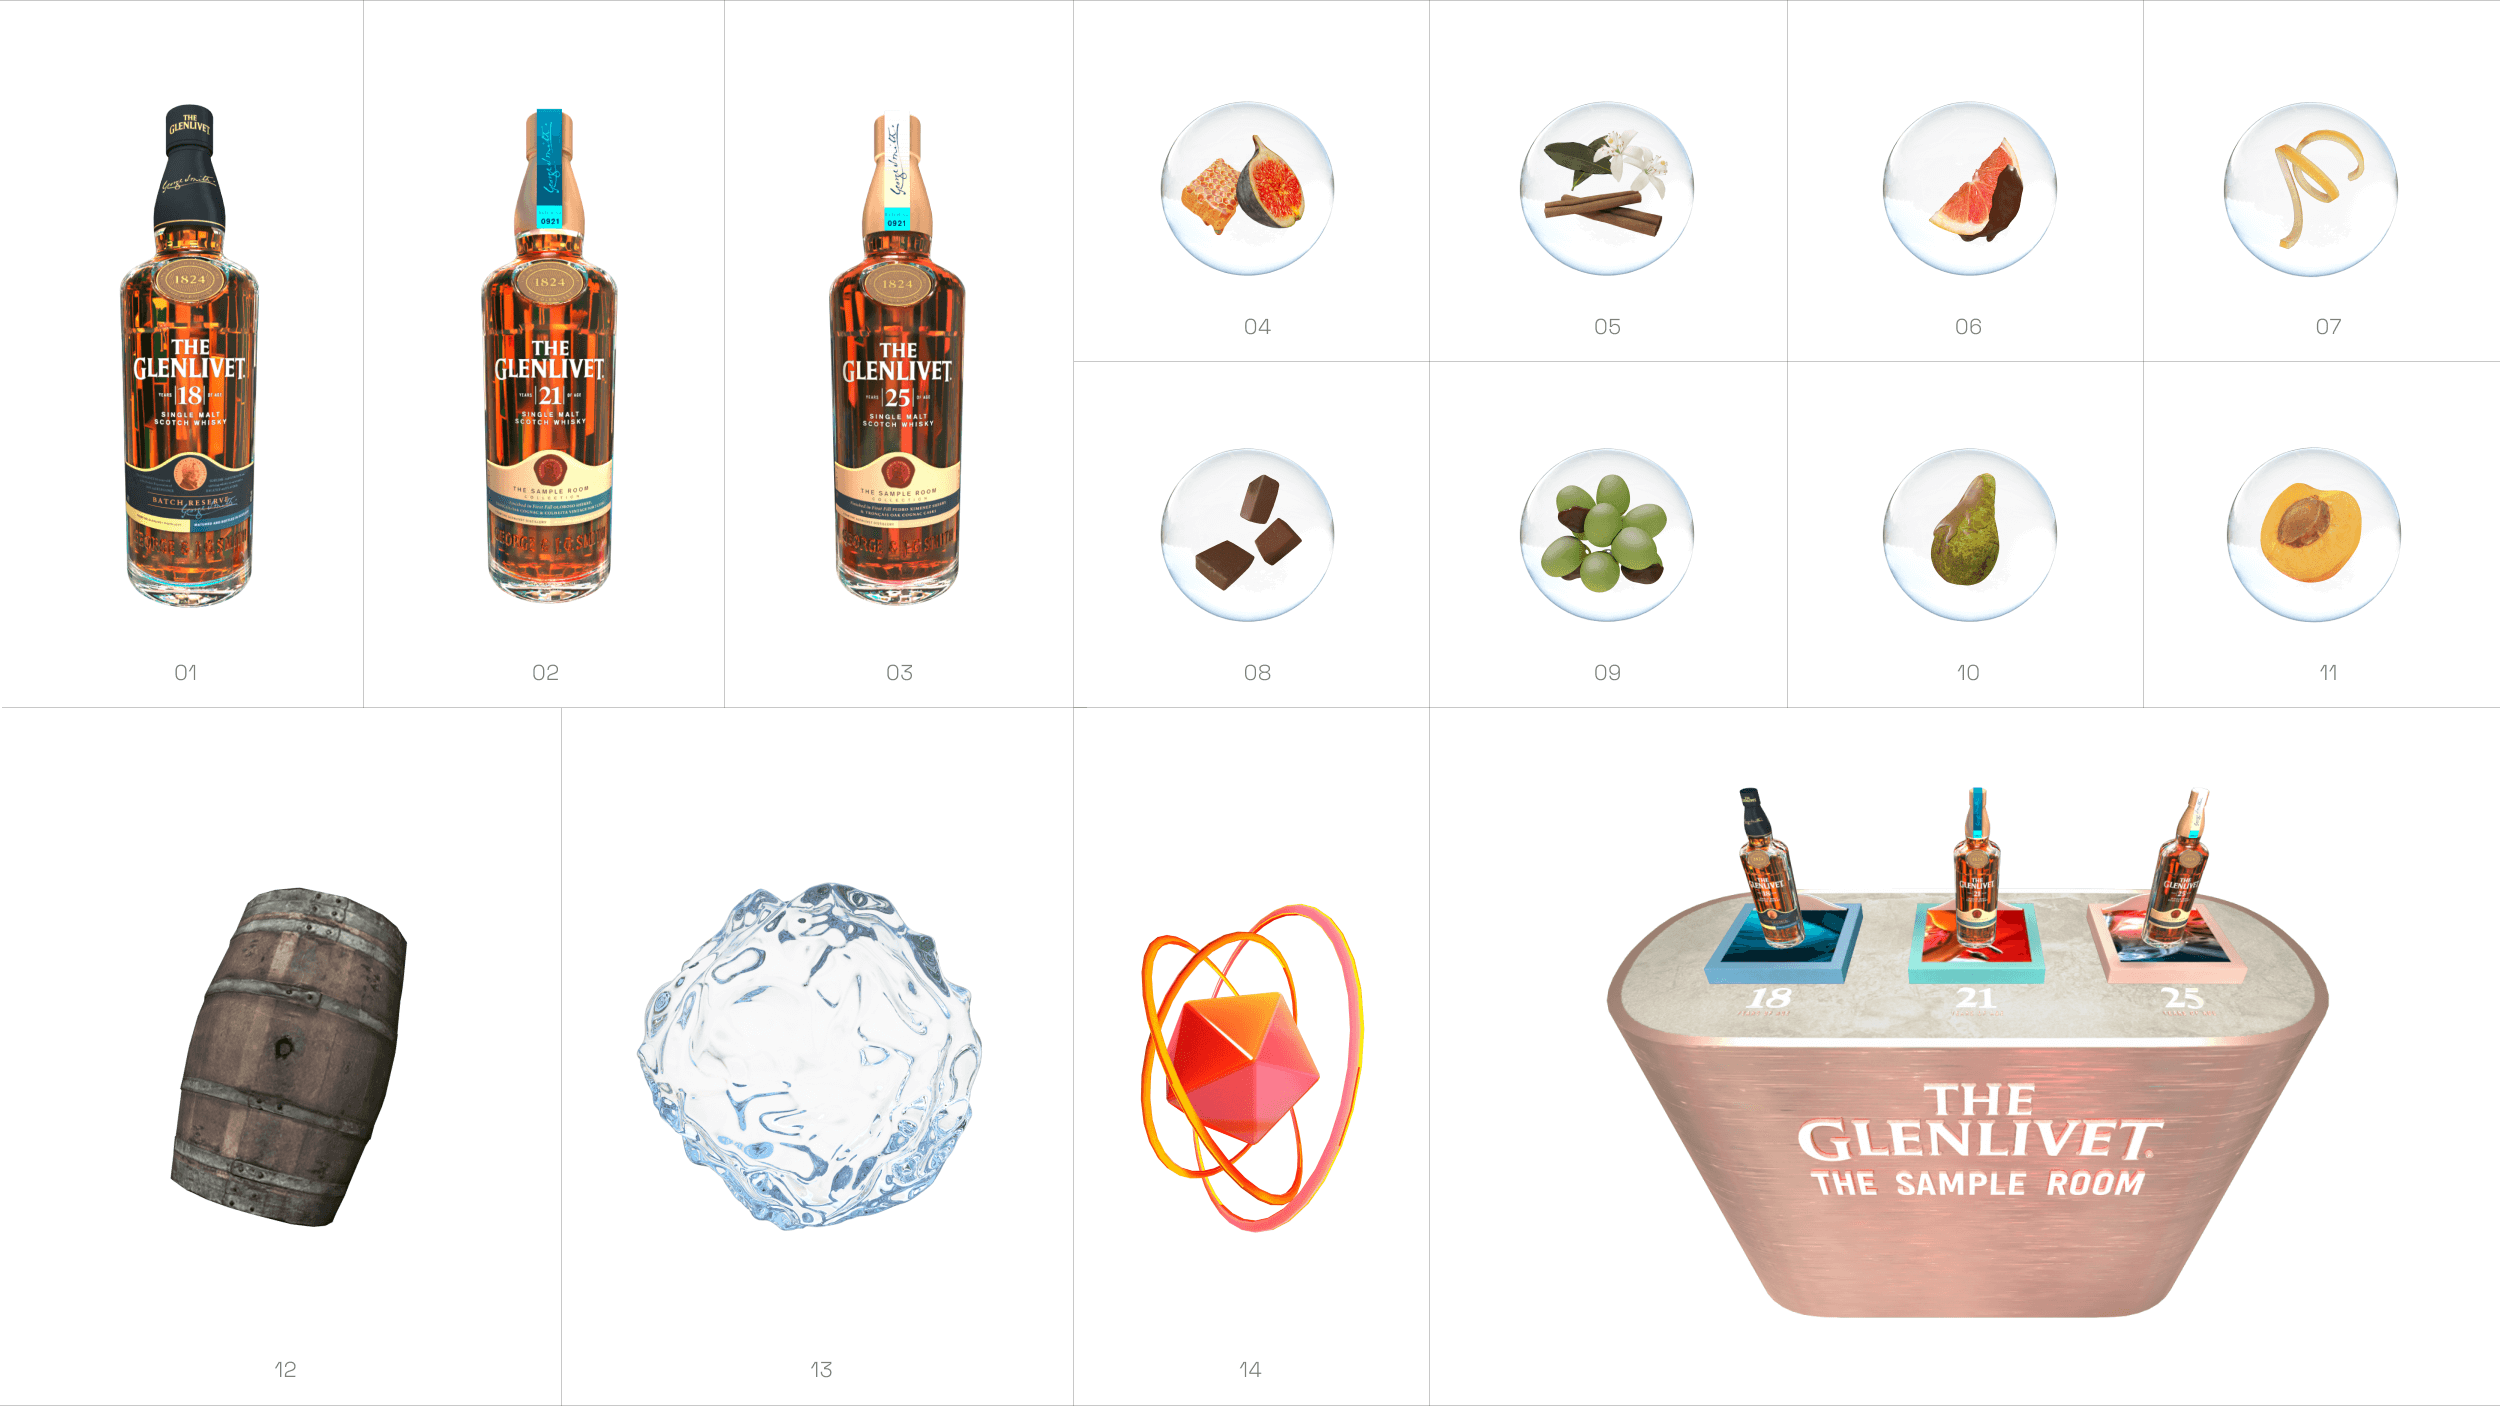 The Glenlivet - Unique Asset Gallery - 3D A - Tasting Room - Assets - Flavor Profile - Notes - Bottles - Barrel - Table - Logo